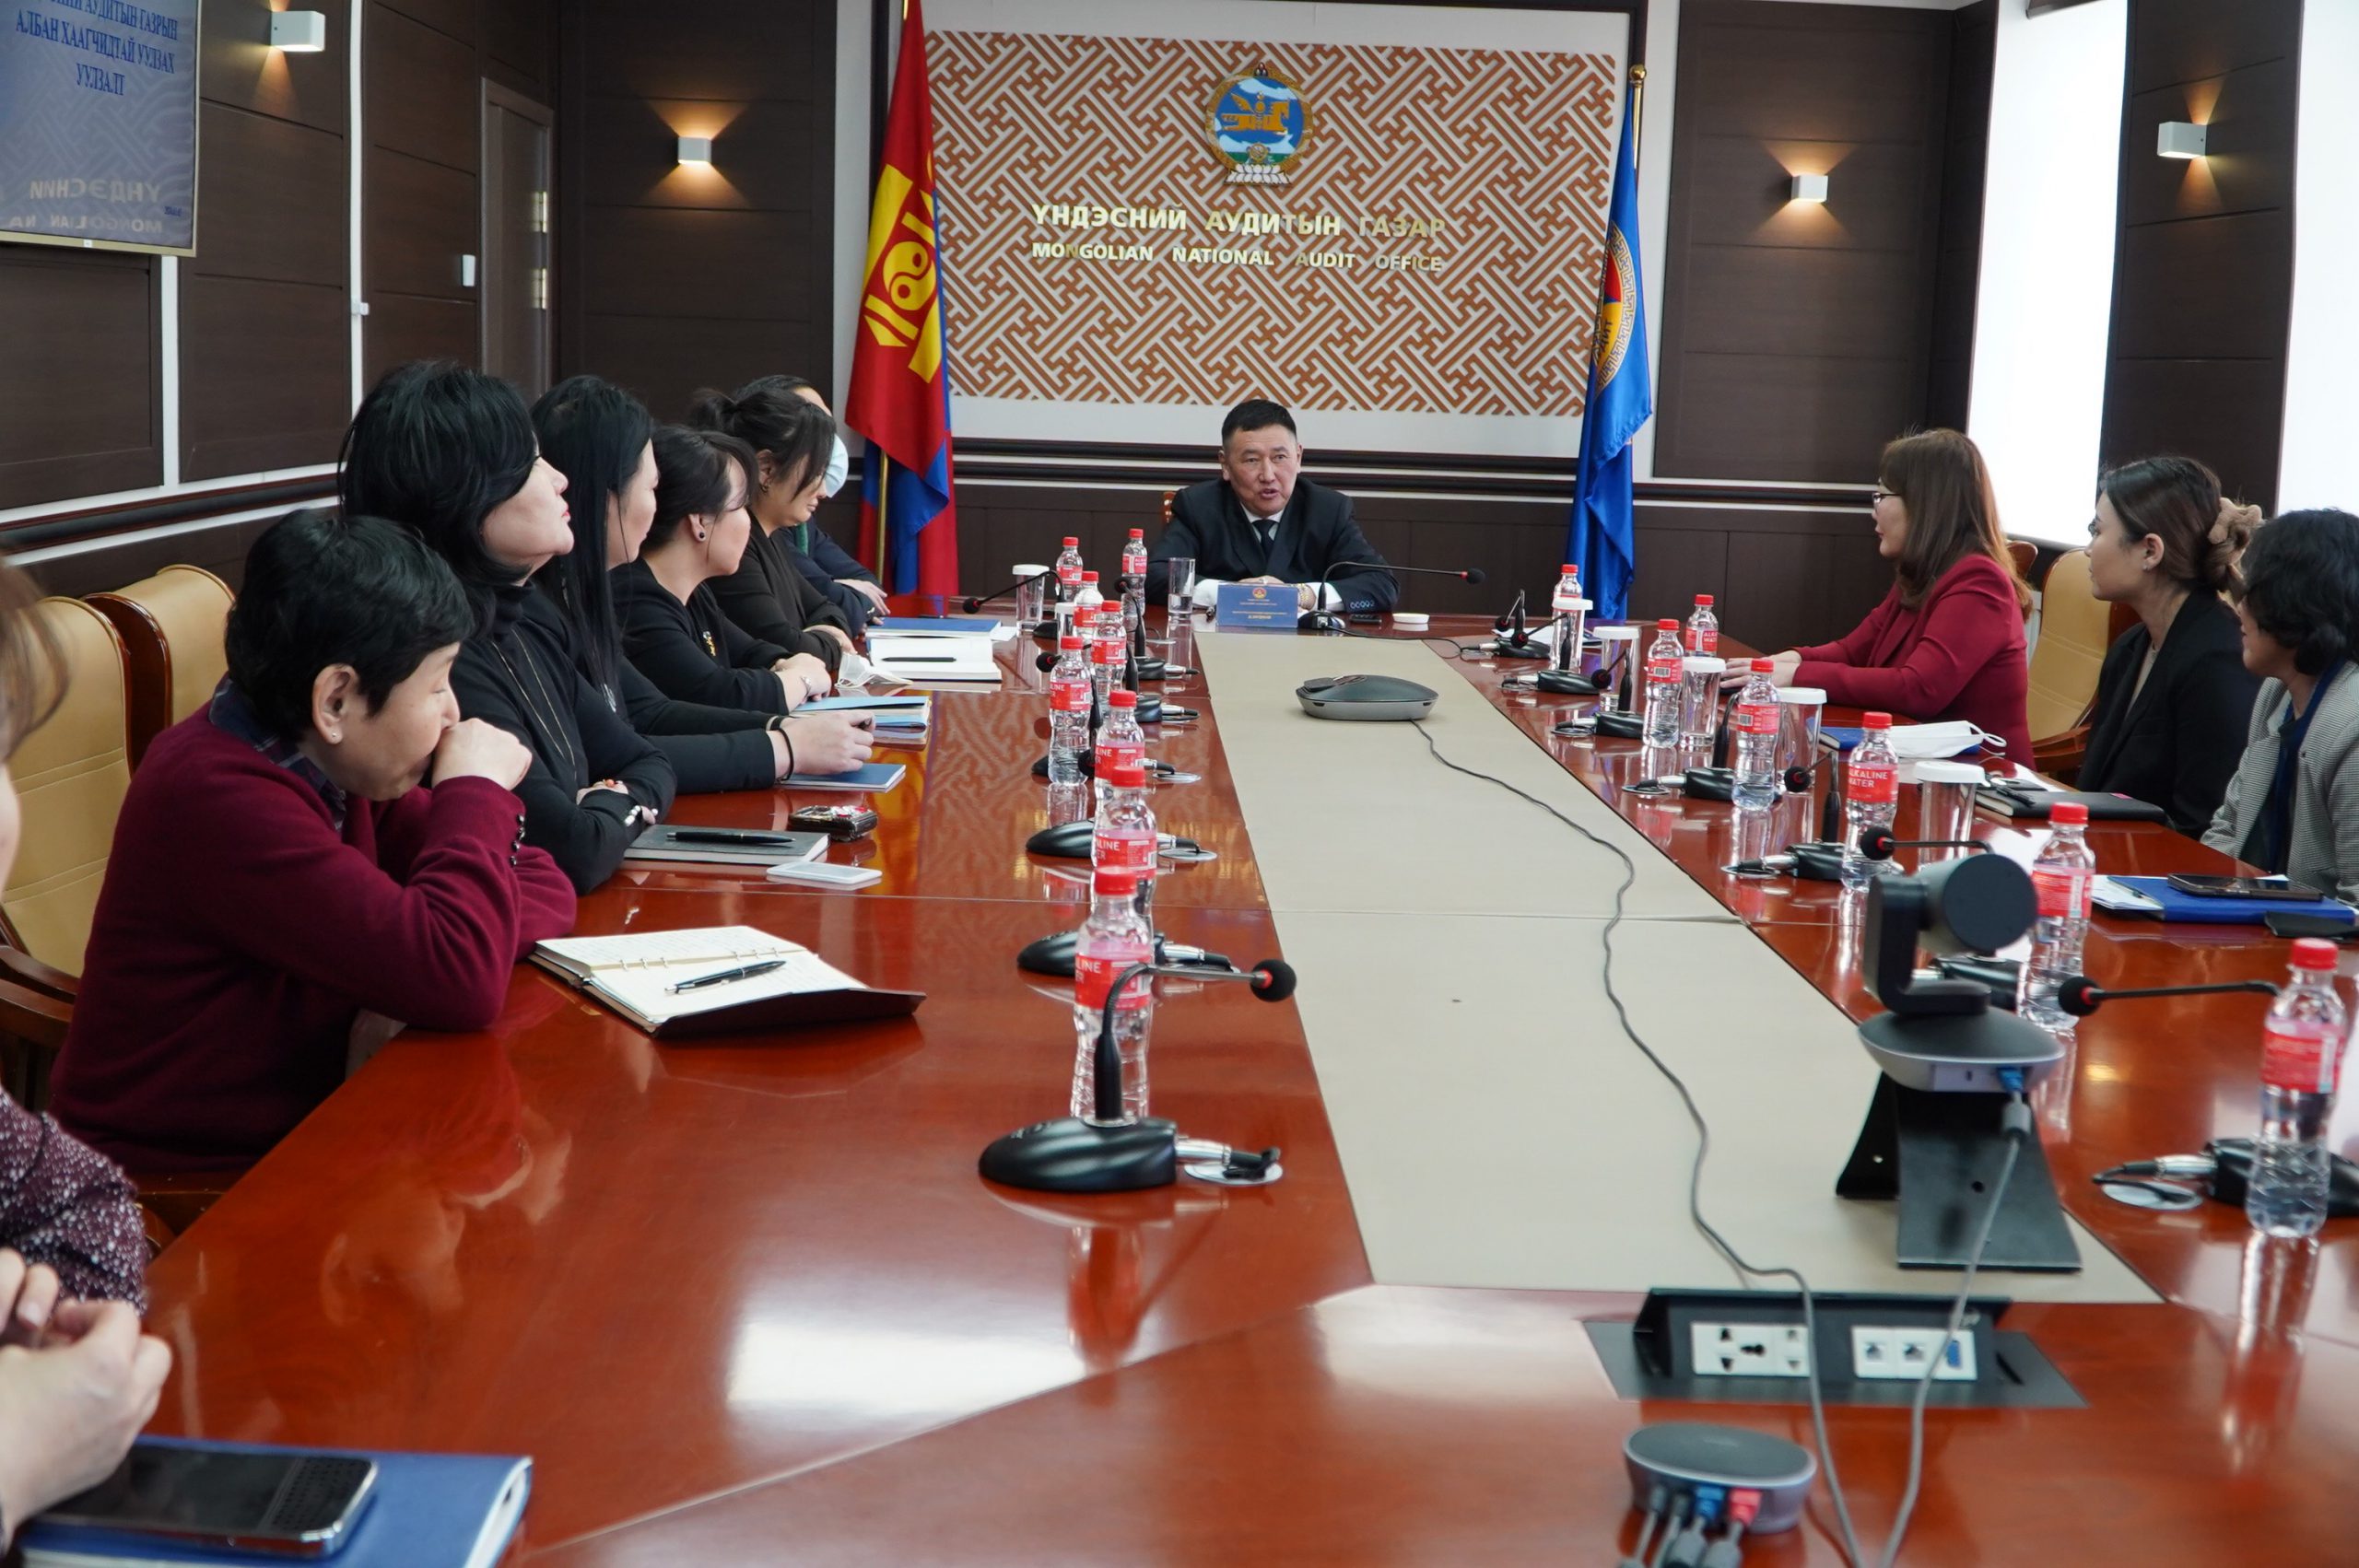 Монгол Улсын Ерөнхий аудиторын албан үүргийг түр орлон гүйцэтгэгч Д.Загджав Төрийн аудитын байгууллагын албан хаагчидтай уулзалт хийлээ